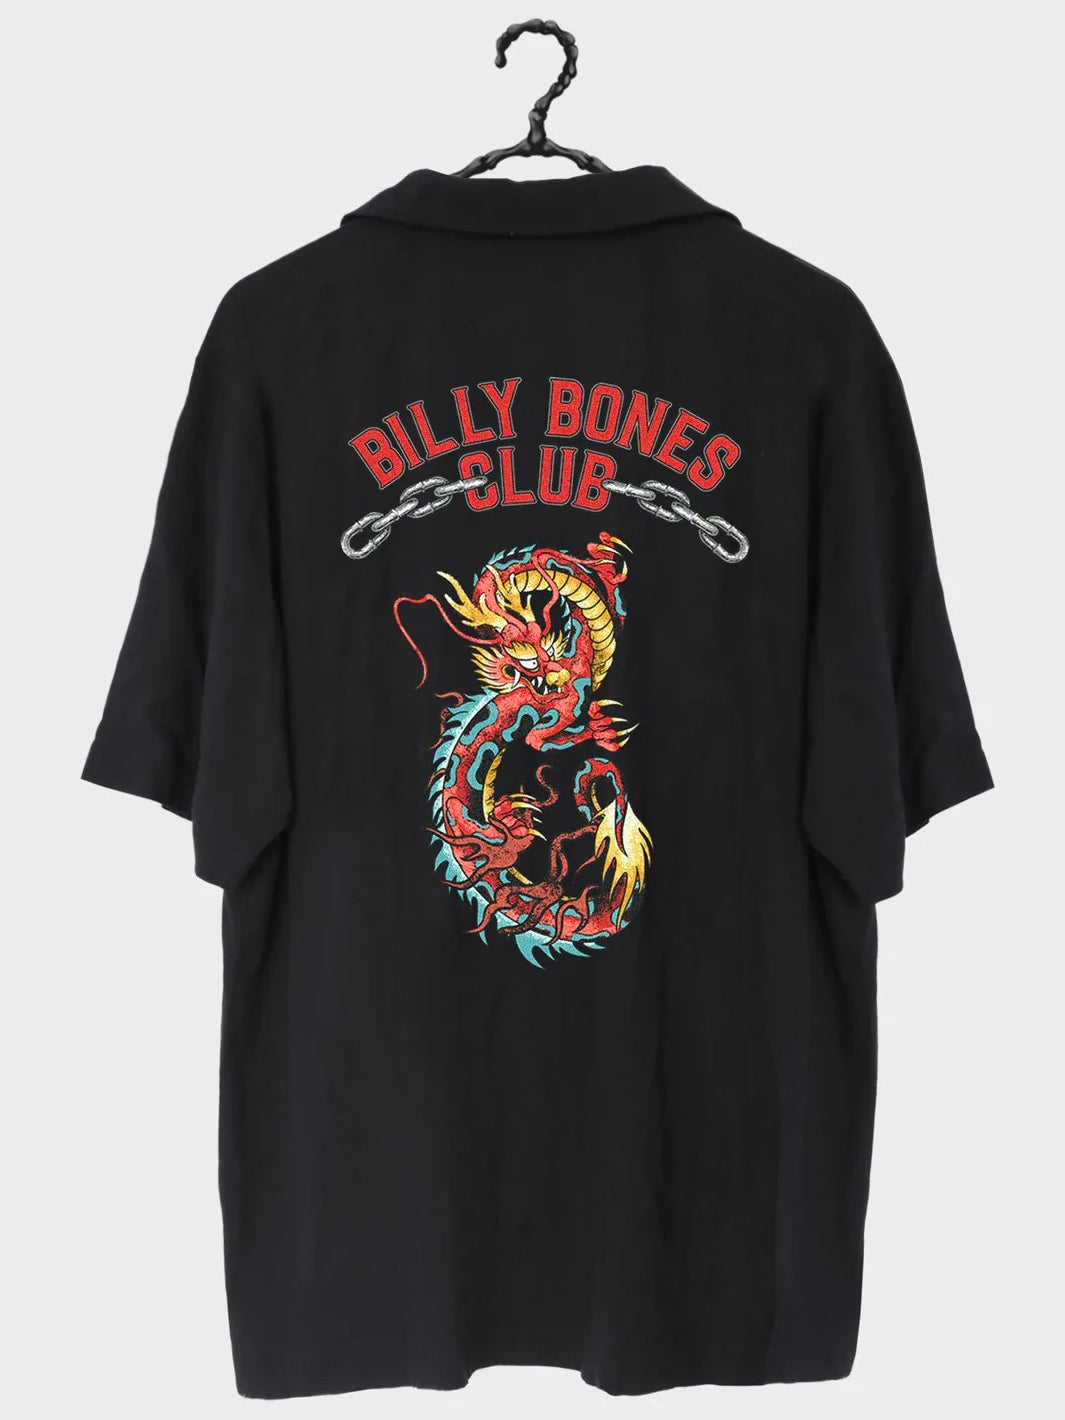 BILLY BONES CLUB DRAGON BOWLO SHIRT - BLACK